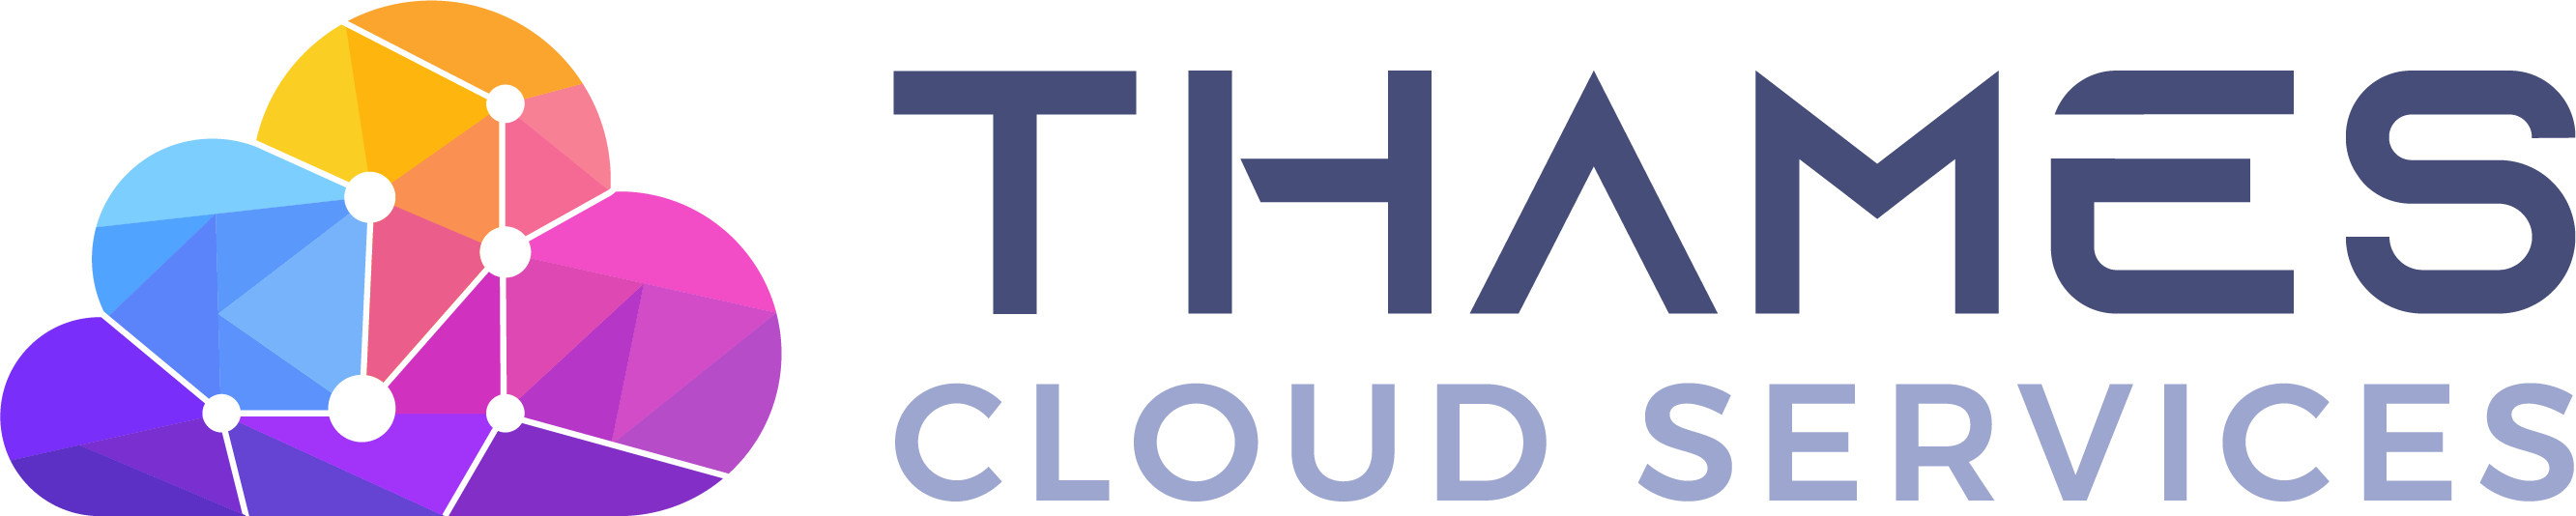 Thames Cloud Services